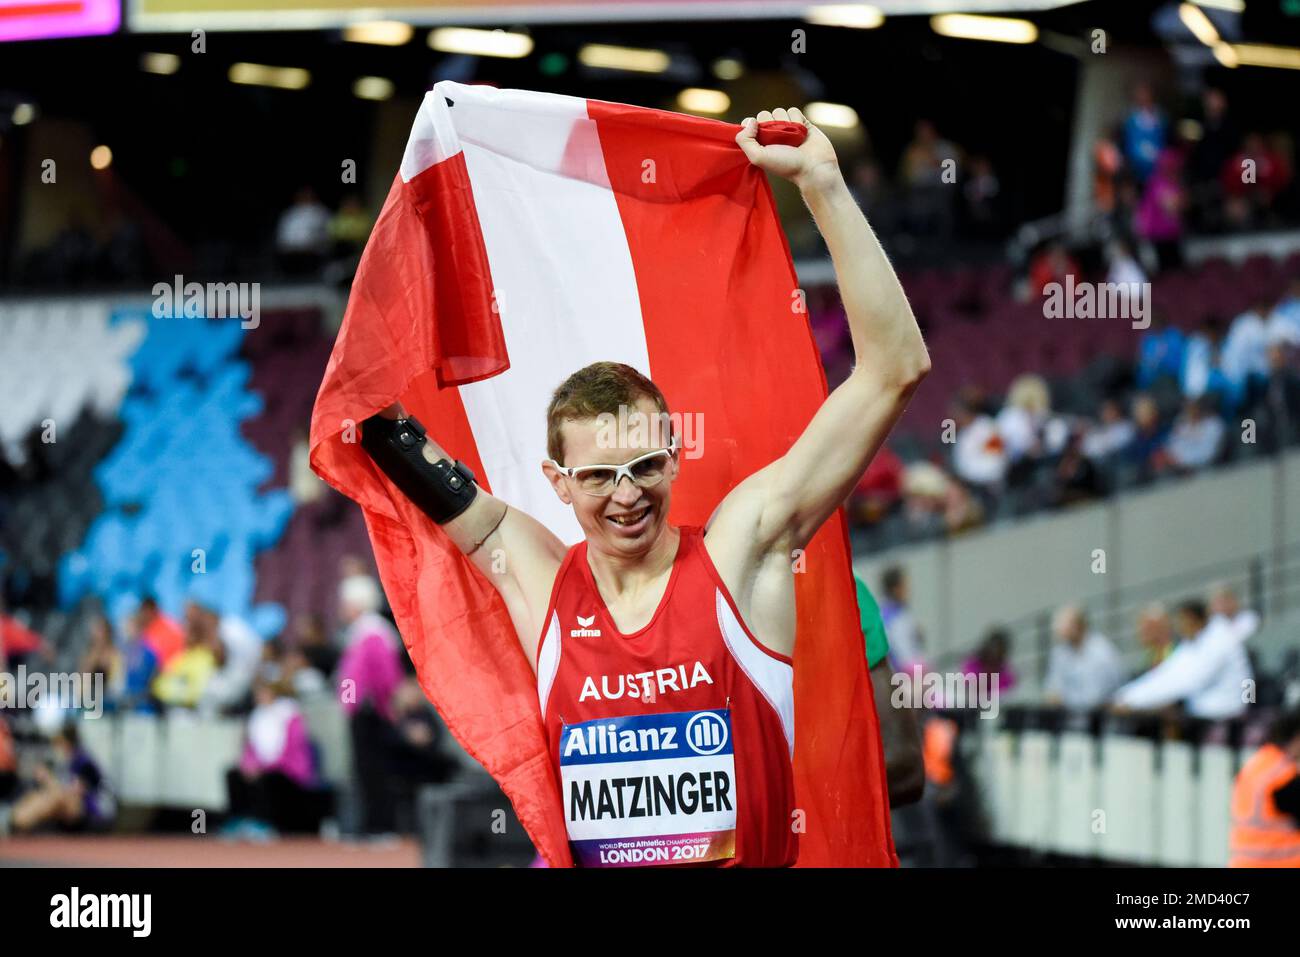 Gunther Matzinger célèbre après avoir remporté le T47 400m aux Championnats du monde d'athlétisme Para 2017, London Stadium, Royaume-Uni. Athlète parasportif autrichien Banque D'Images